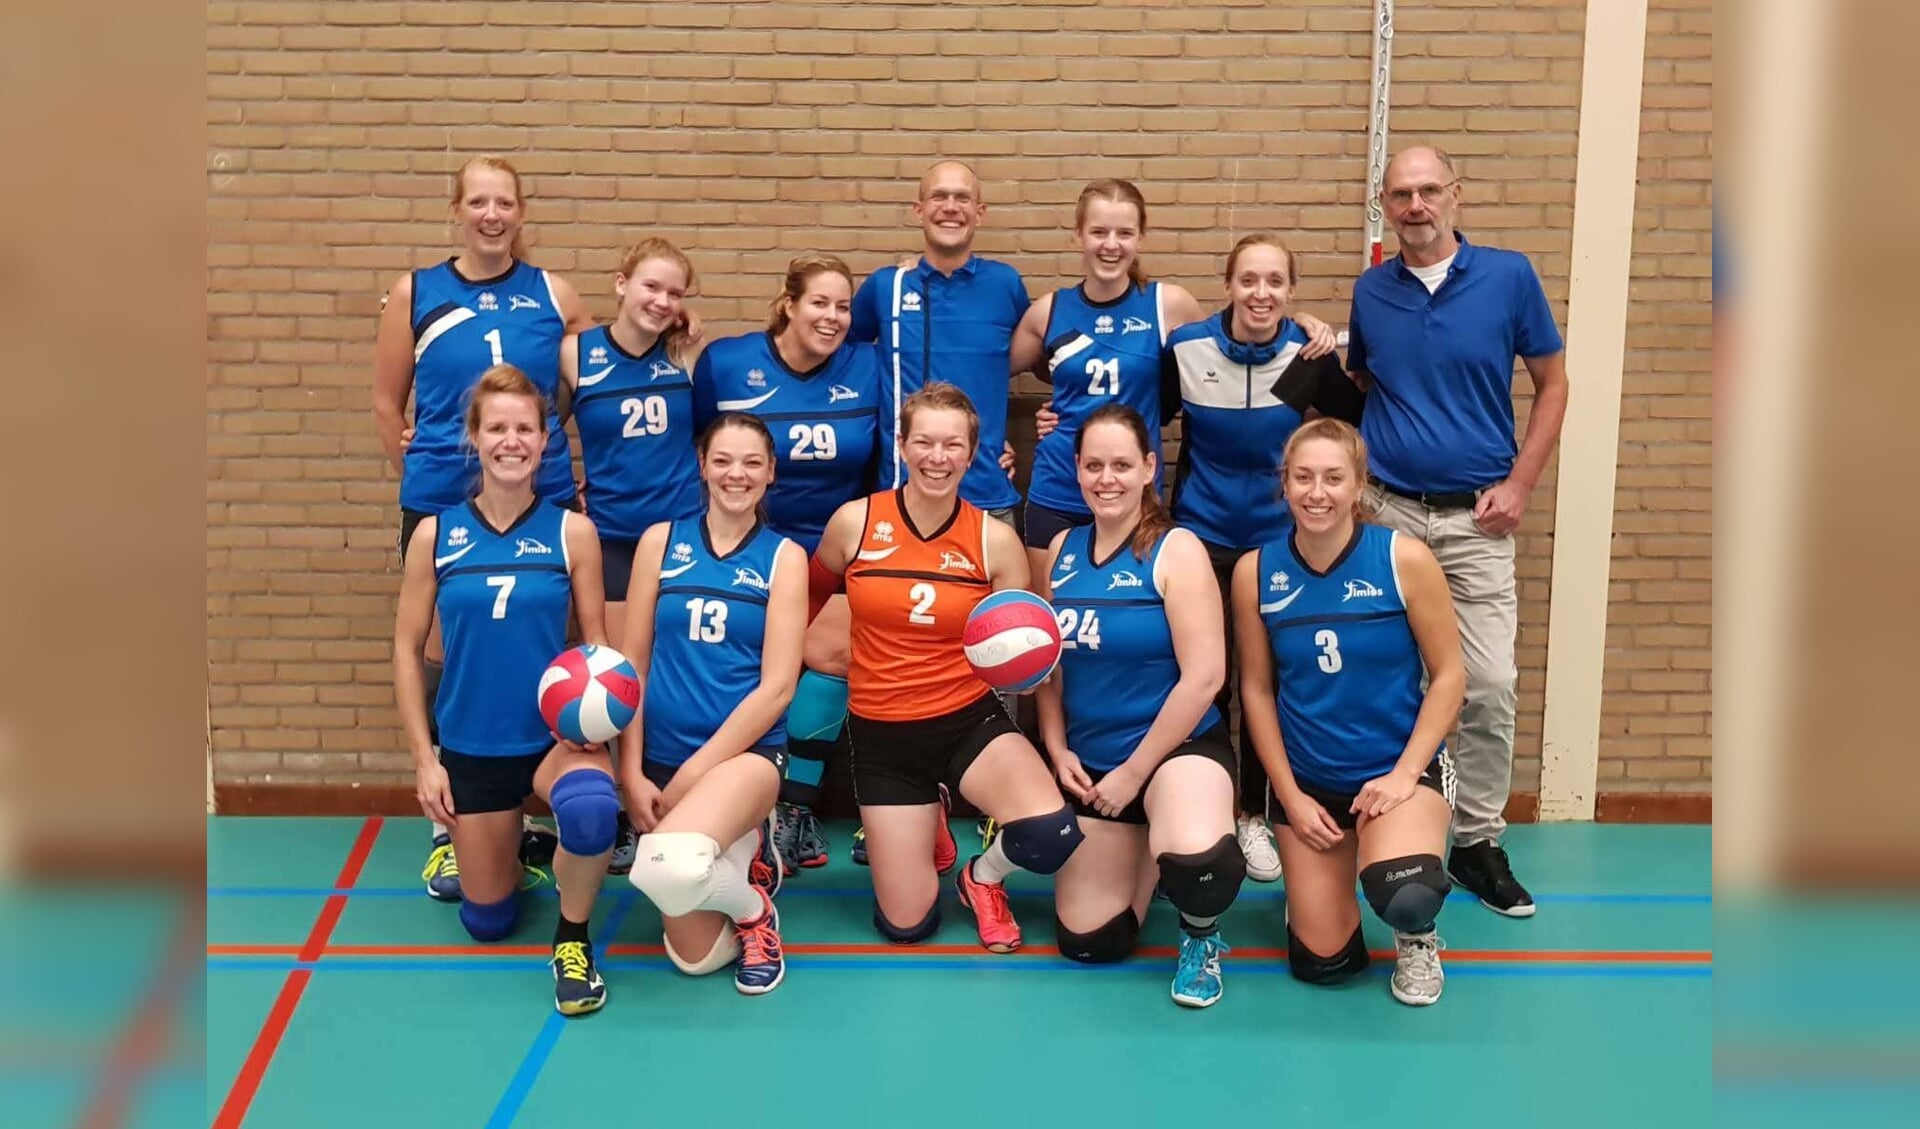 Het team van Jan Zaal met Angela Hunink (7), Hester Faber (2) en Nadine van Maaren (29).